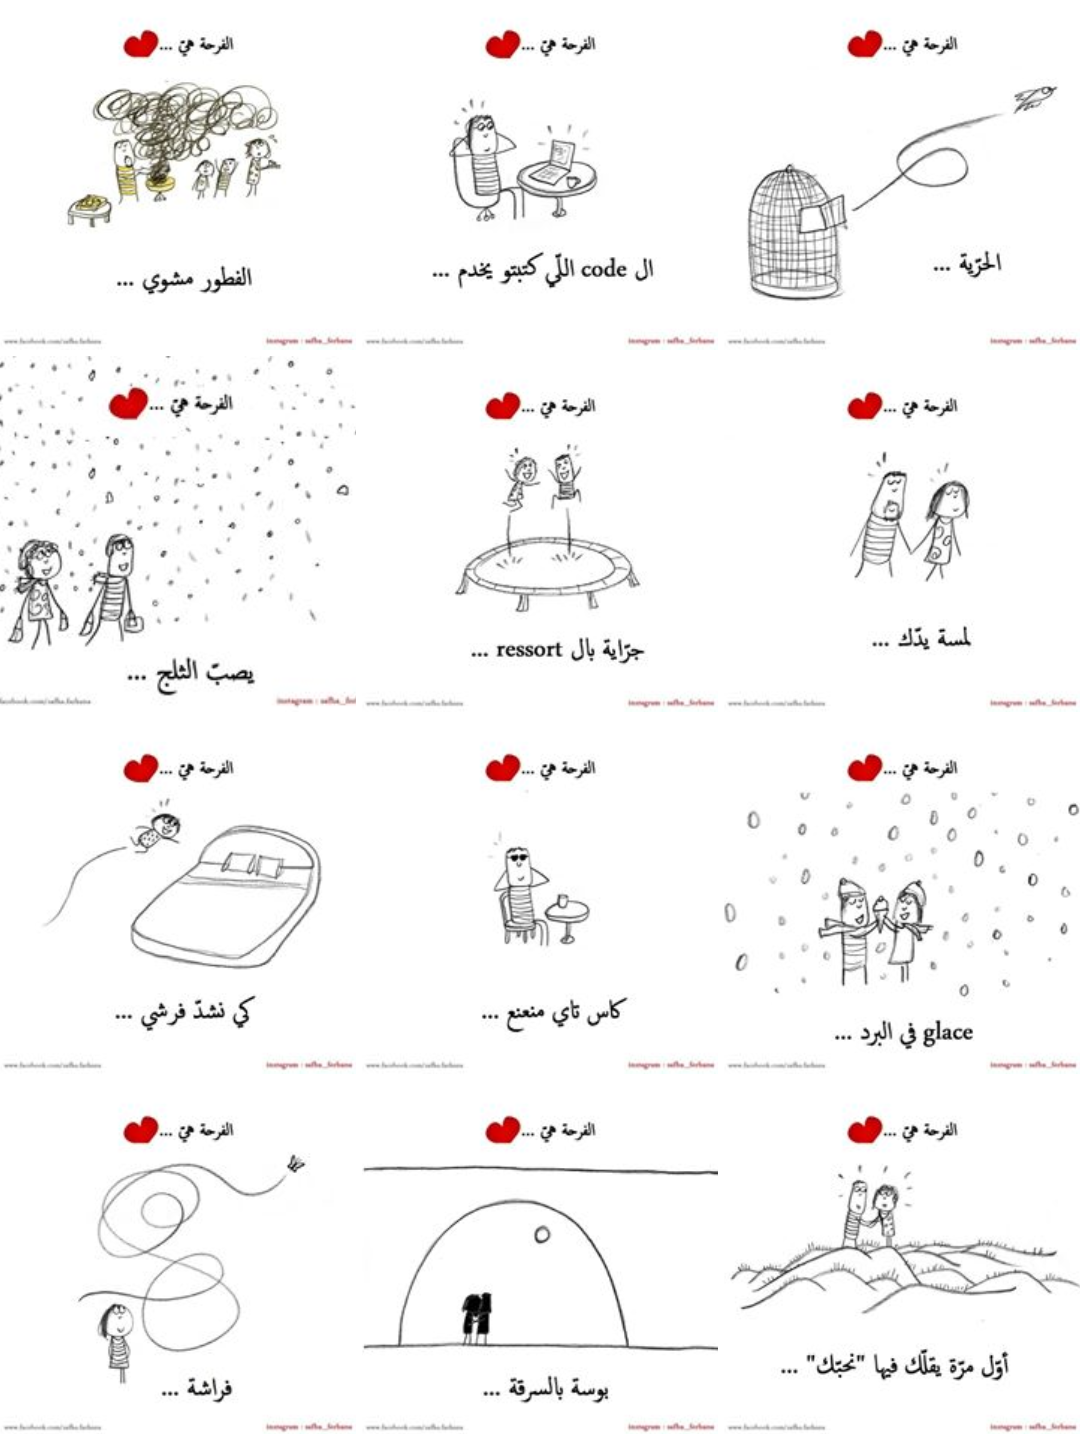 Instagram tunisie top meilleur creative 